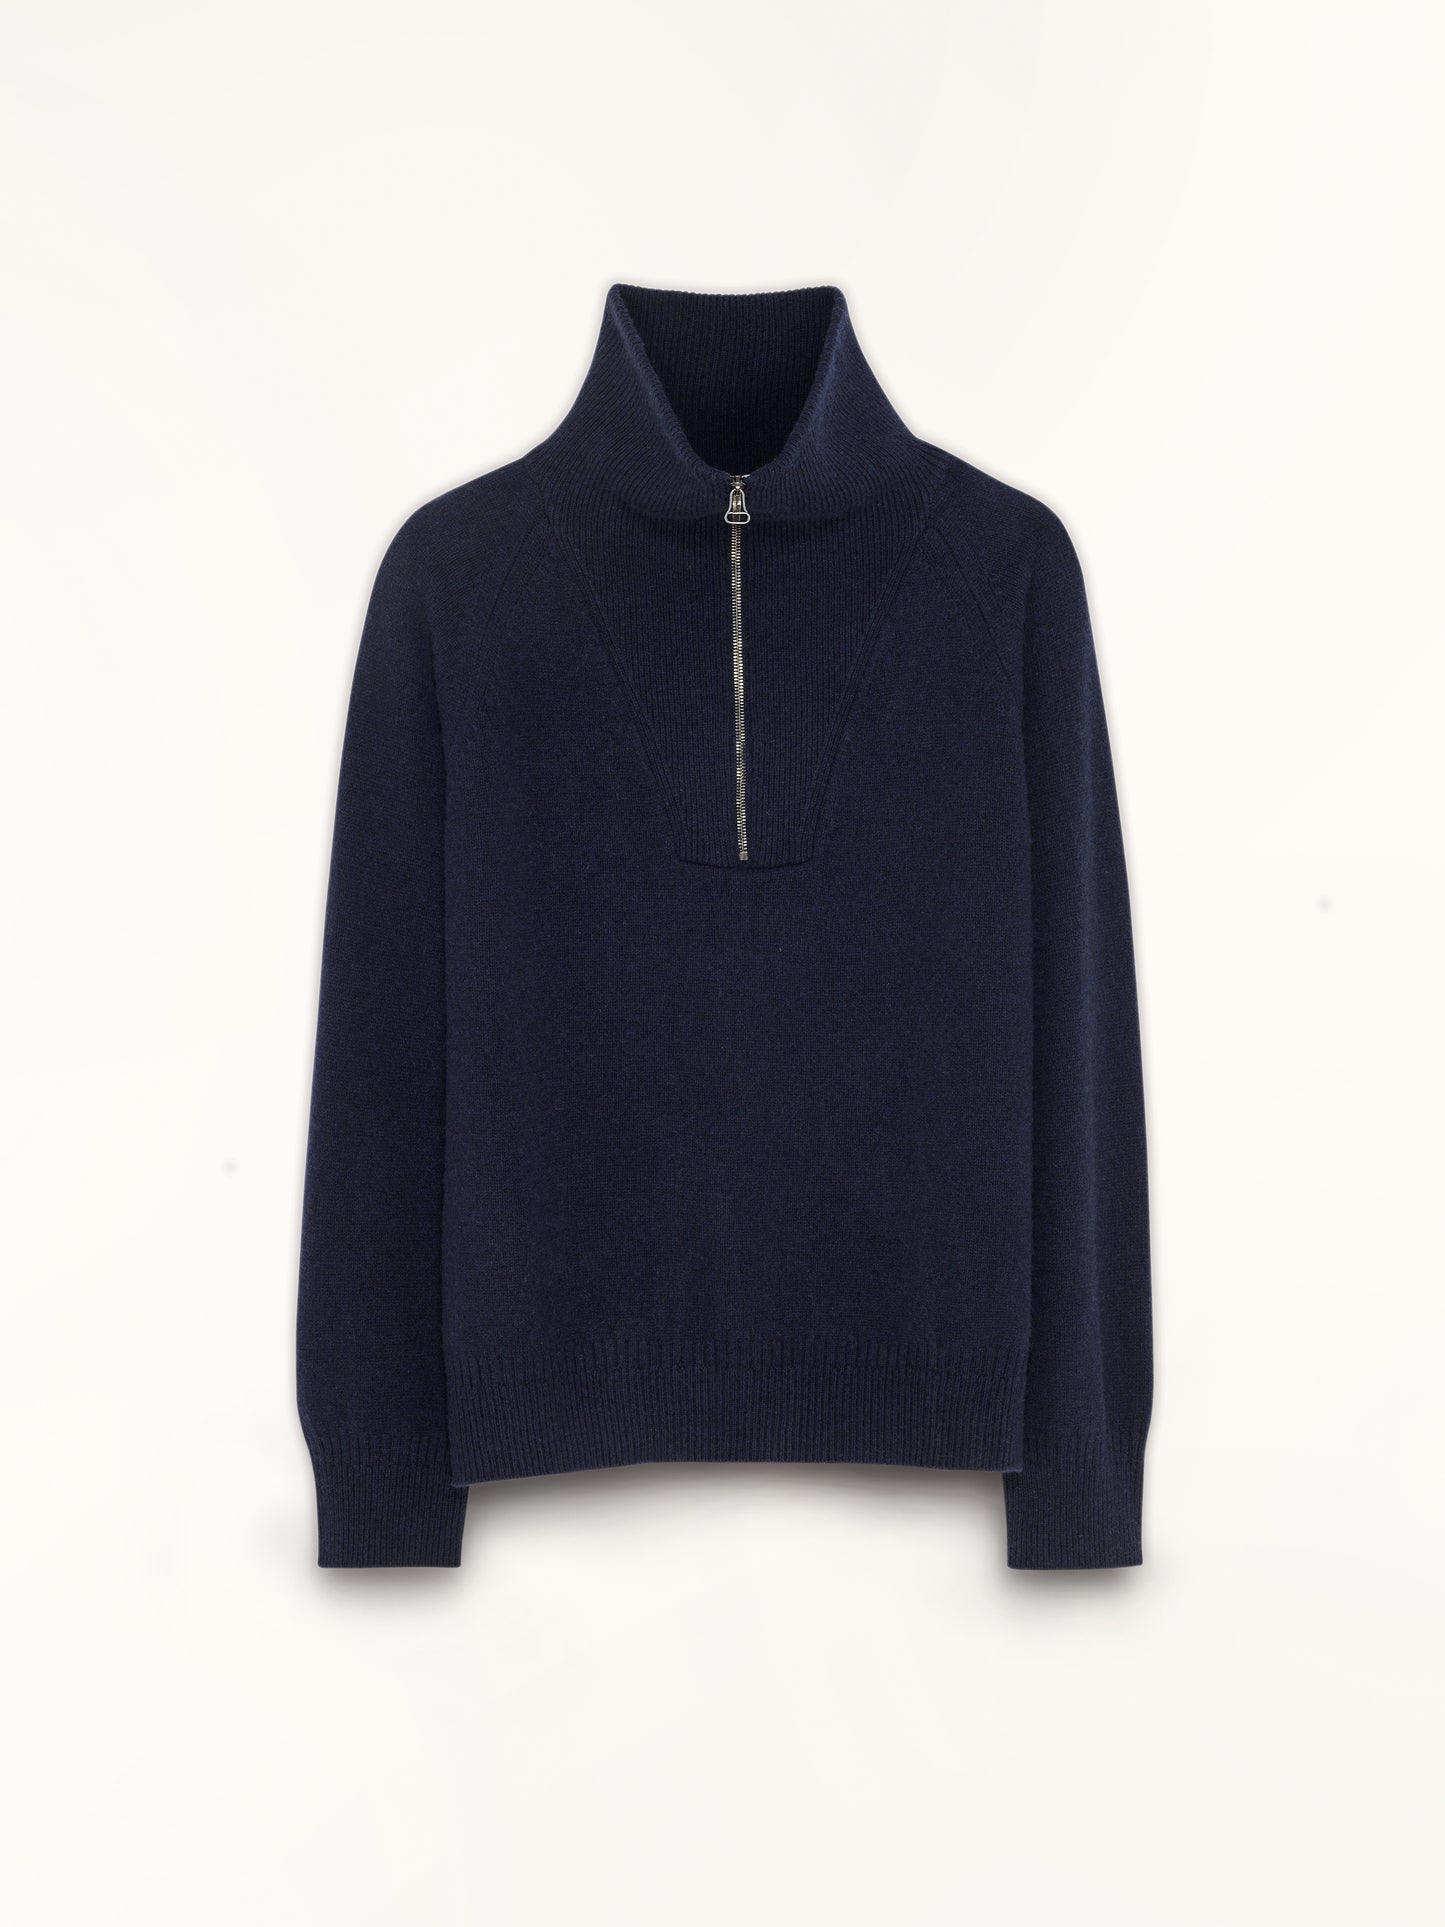 Men's zip neck sweater in Cashmere Dark Navy